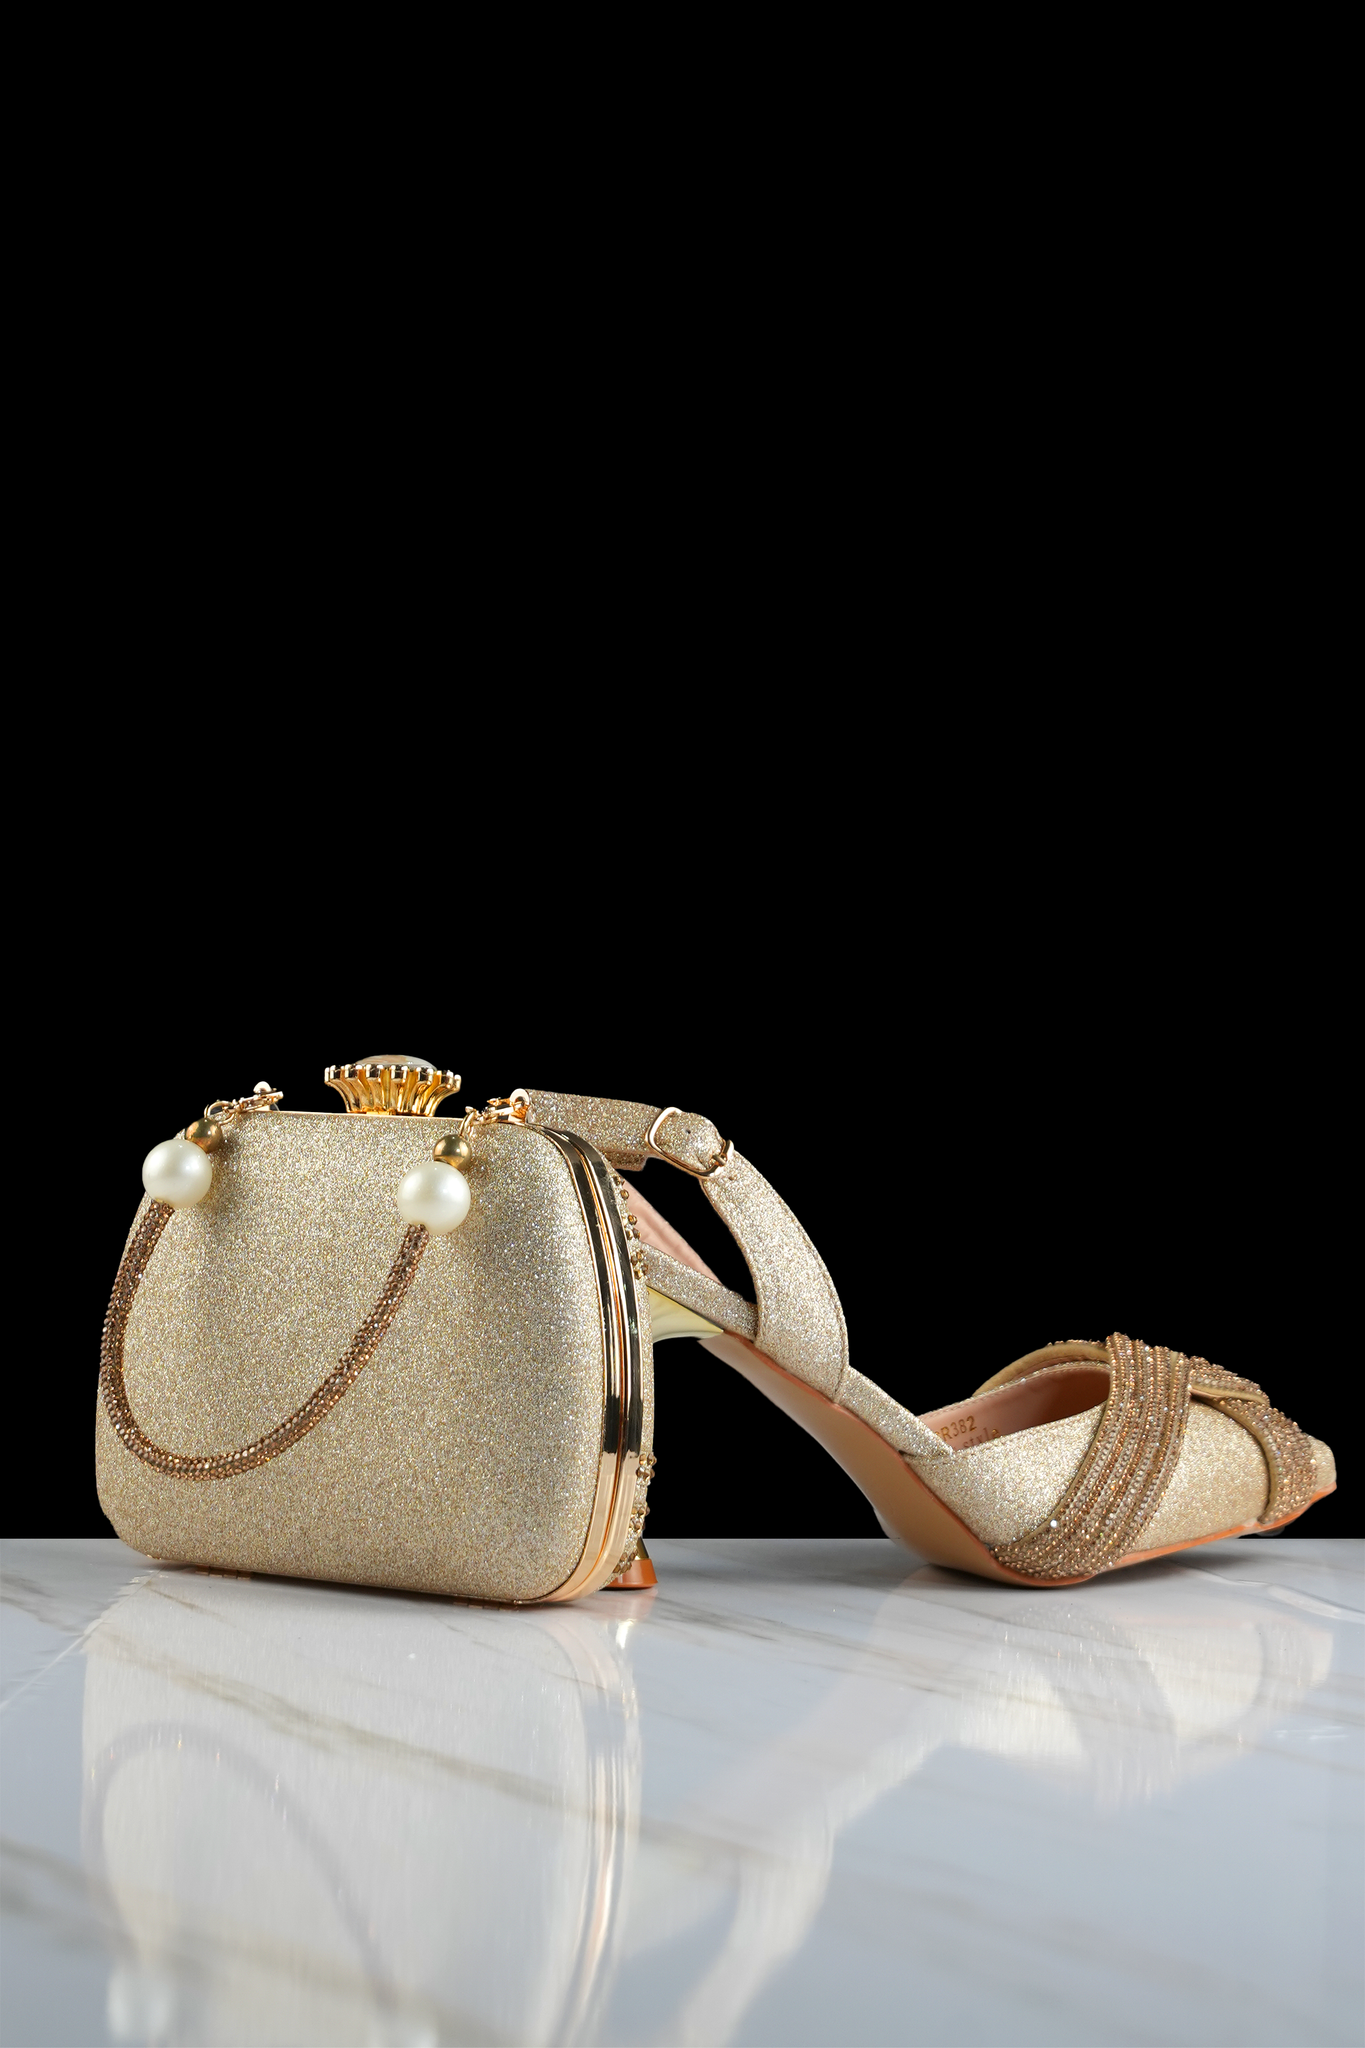 Fuchsia Three-Dimensional Bag High Heels Shoes - Gold